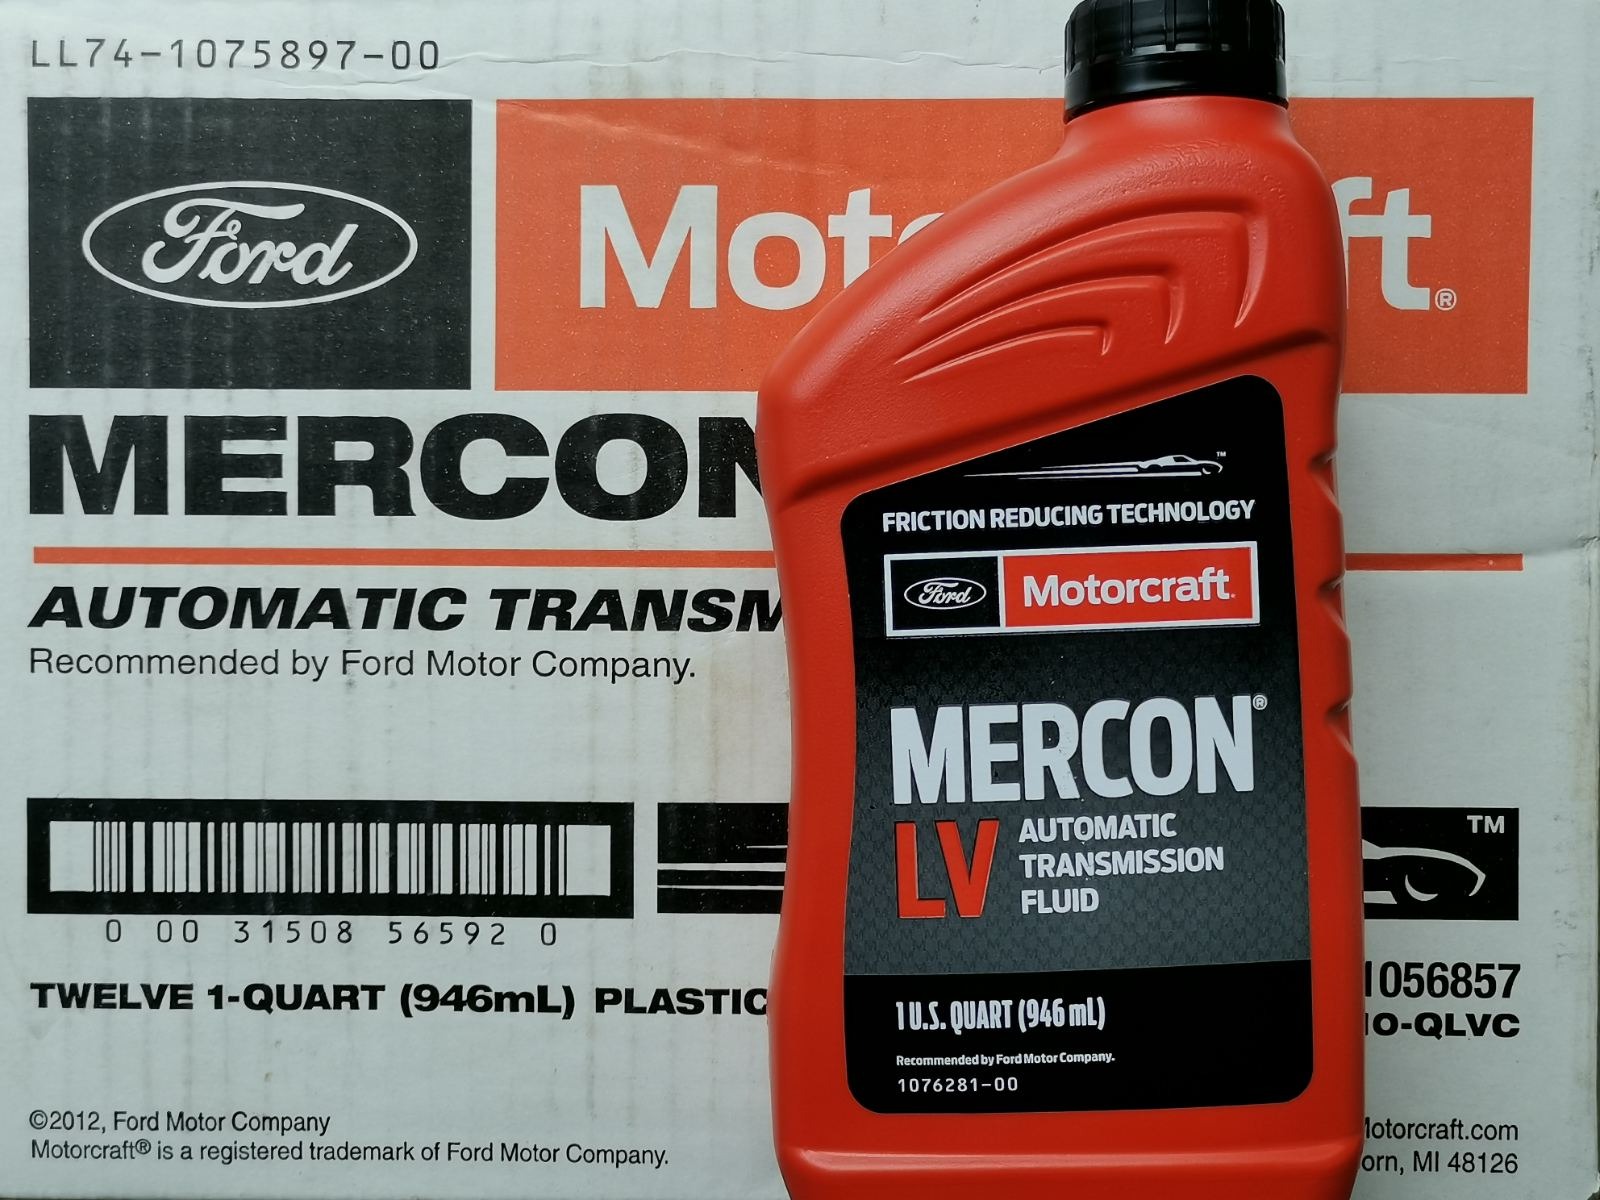 Mercon LV Transmission Fluids in Transmission Fluids 